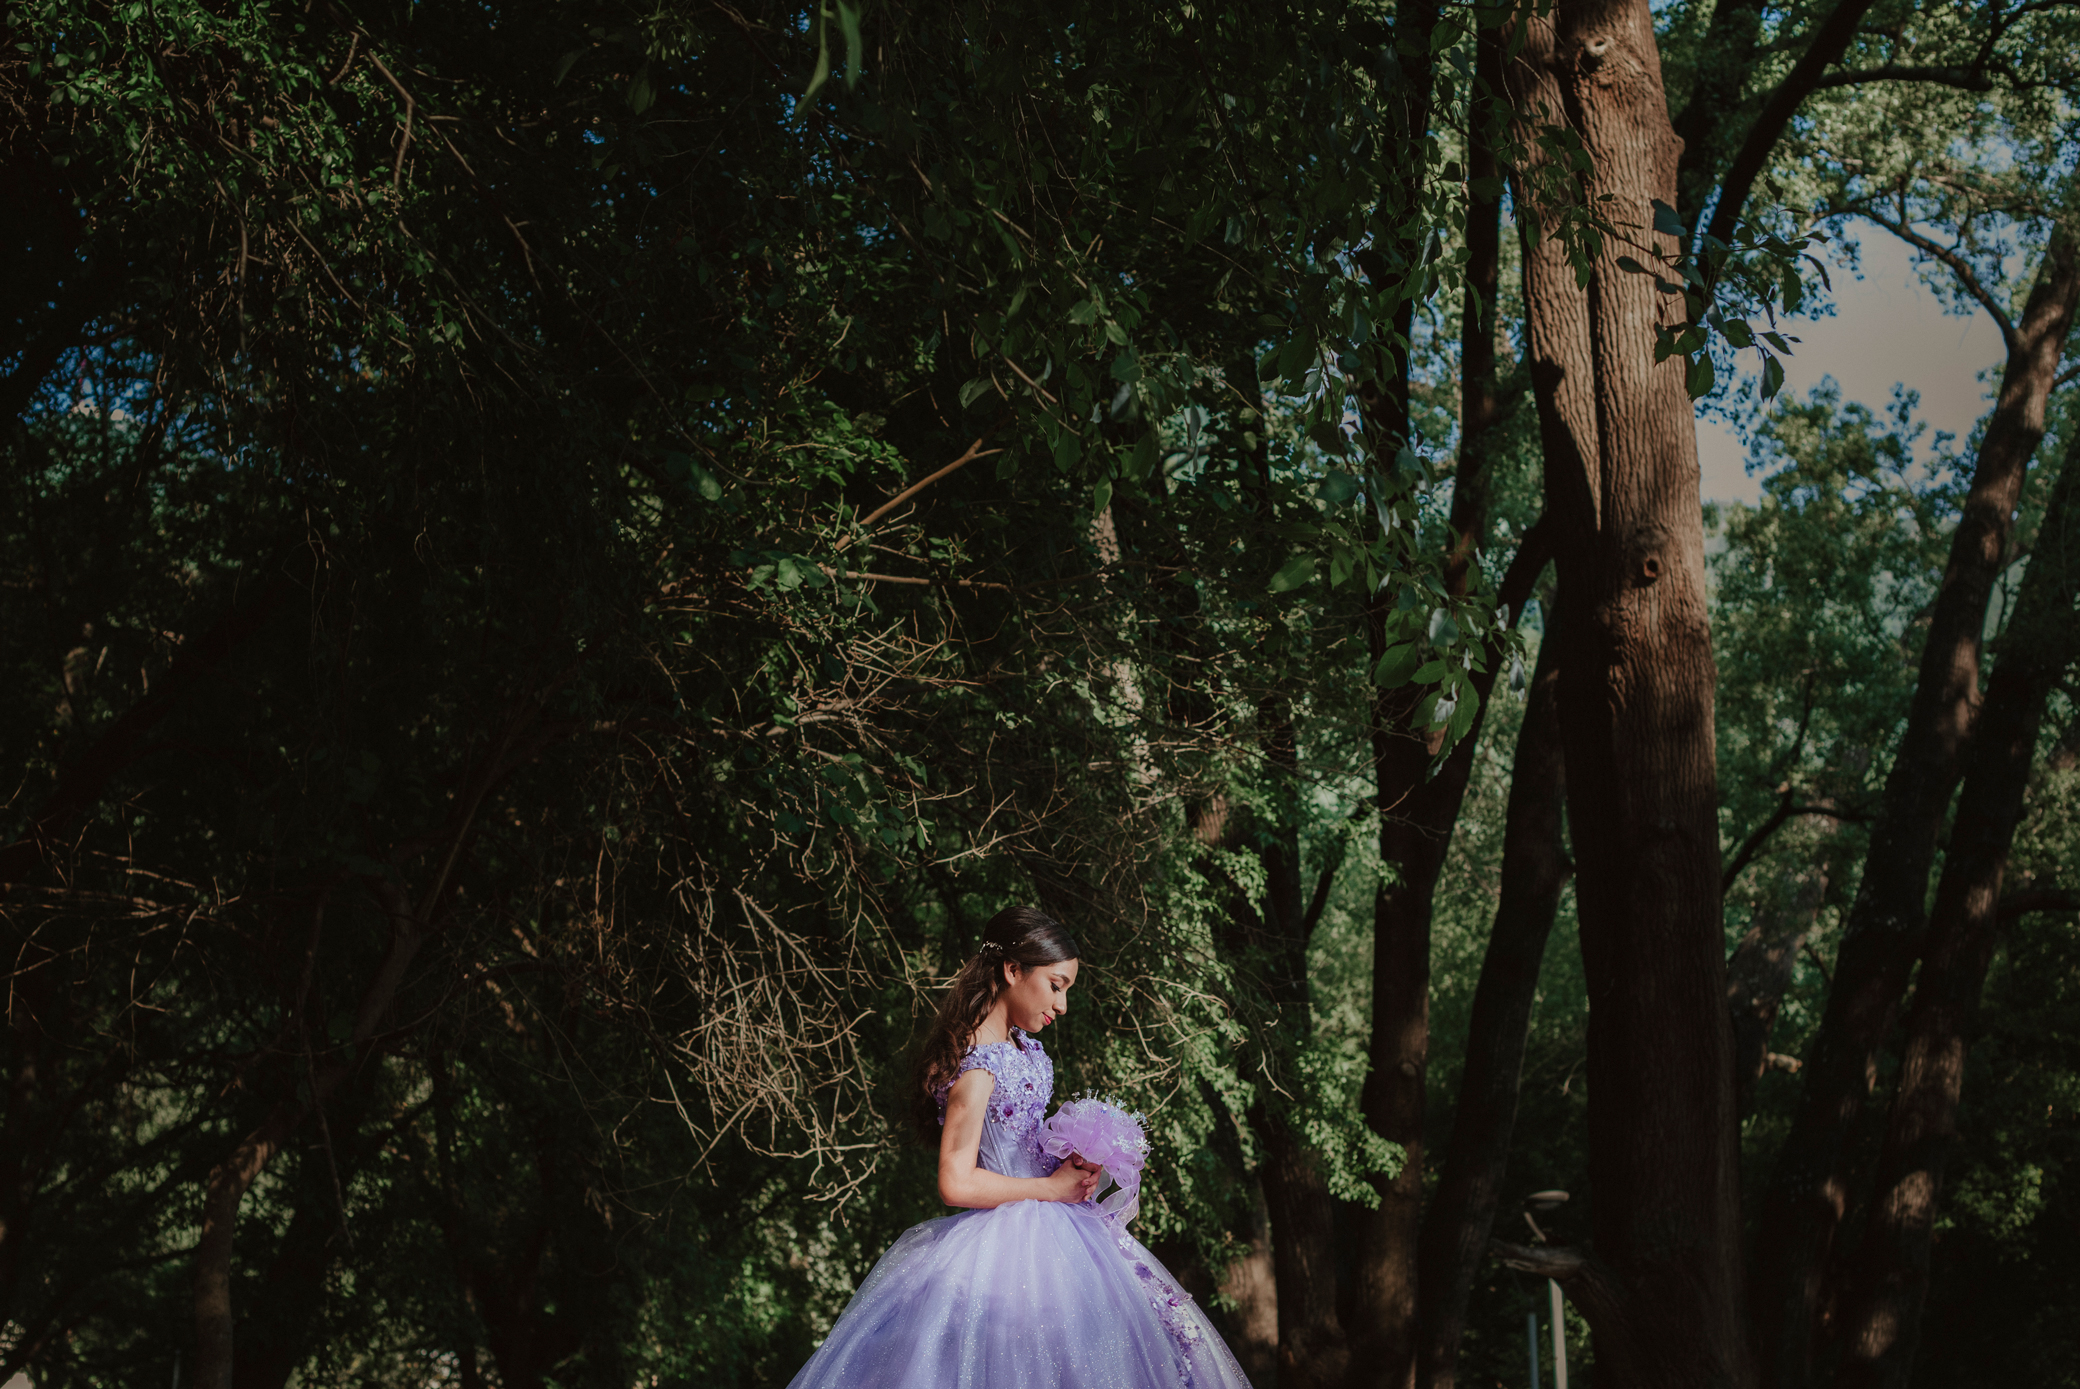 Sesión de XV años de Carolina en el Parque Hundido, Guadalupe, Nuevo León. La quinceañera posa con un vestido morado en el puente del parque, con los árboles de fondo.